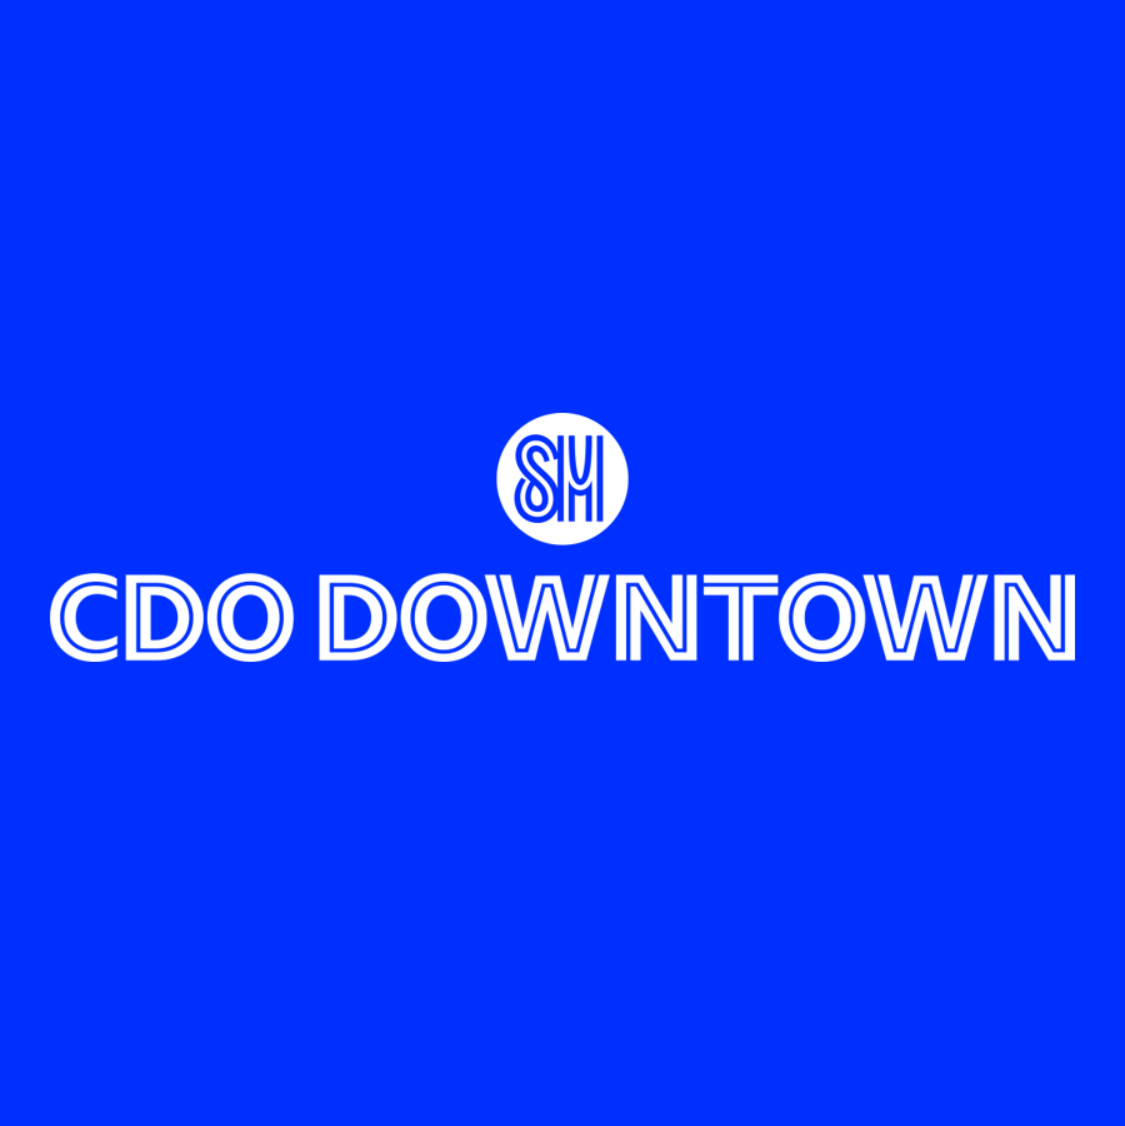 SM CDO Downtown 